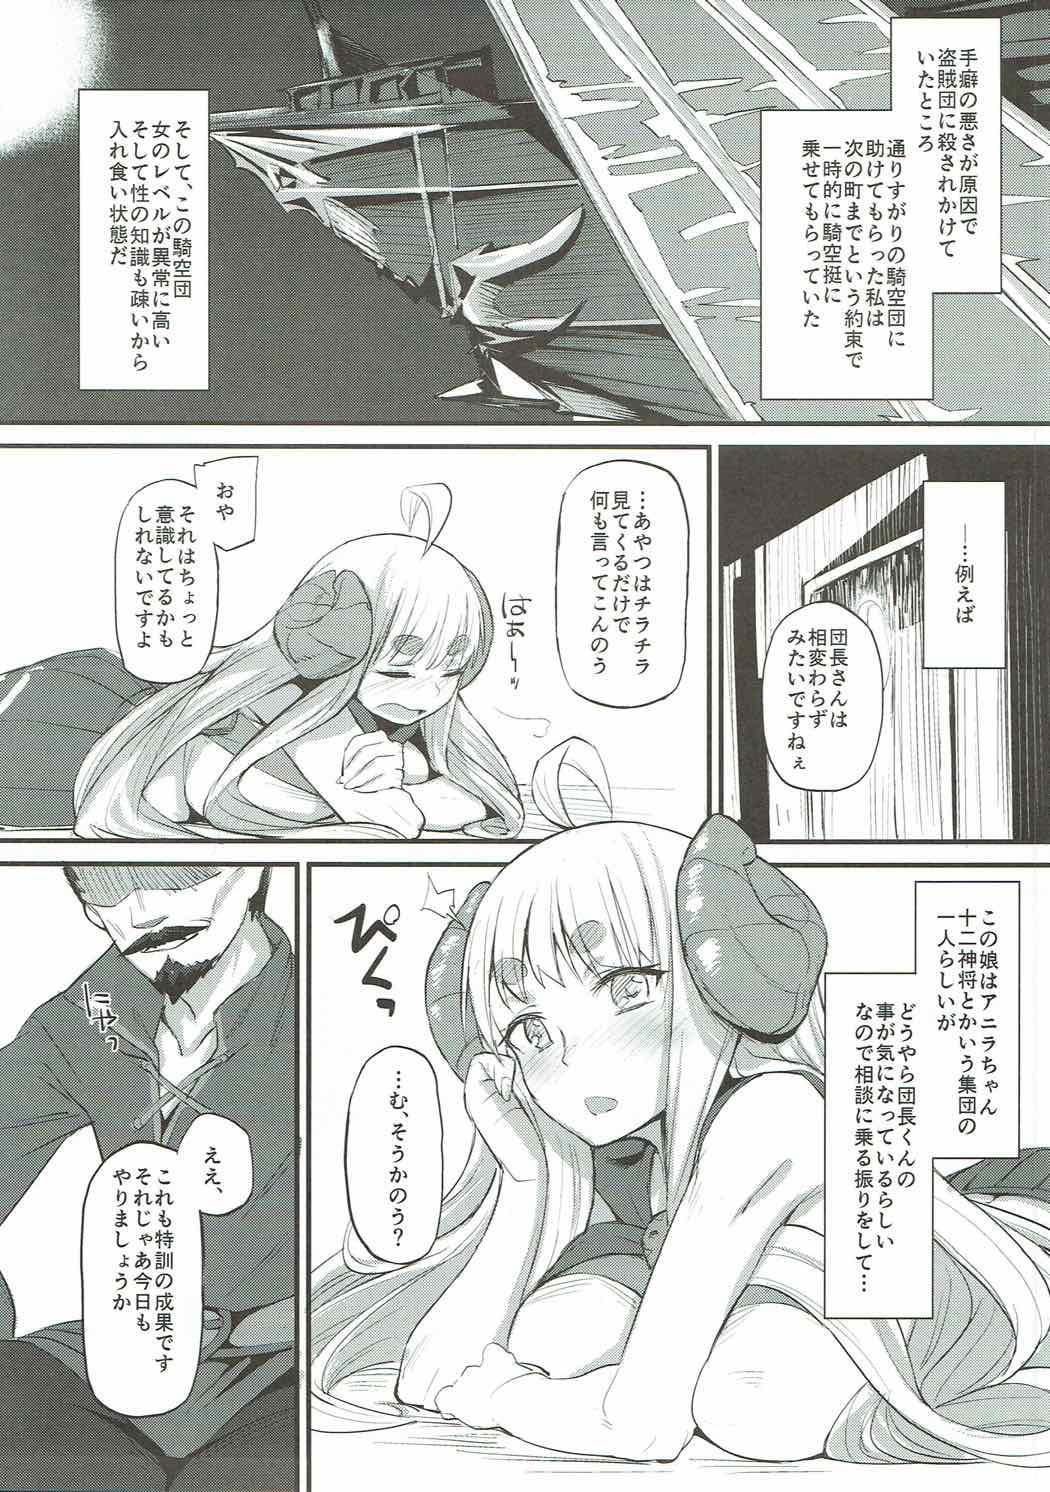 Vergon Ore datte Tsuyokute Kawaii Onnanoko to Ecchi ga Shitai! - Granblue fantasy Fake - Page 3